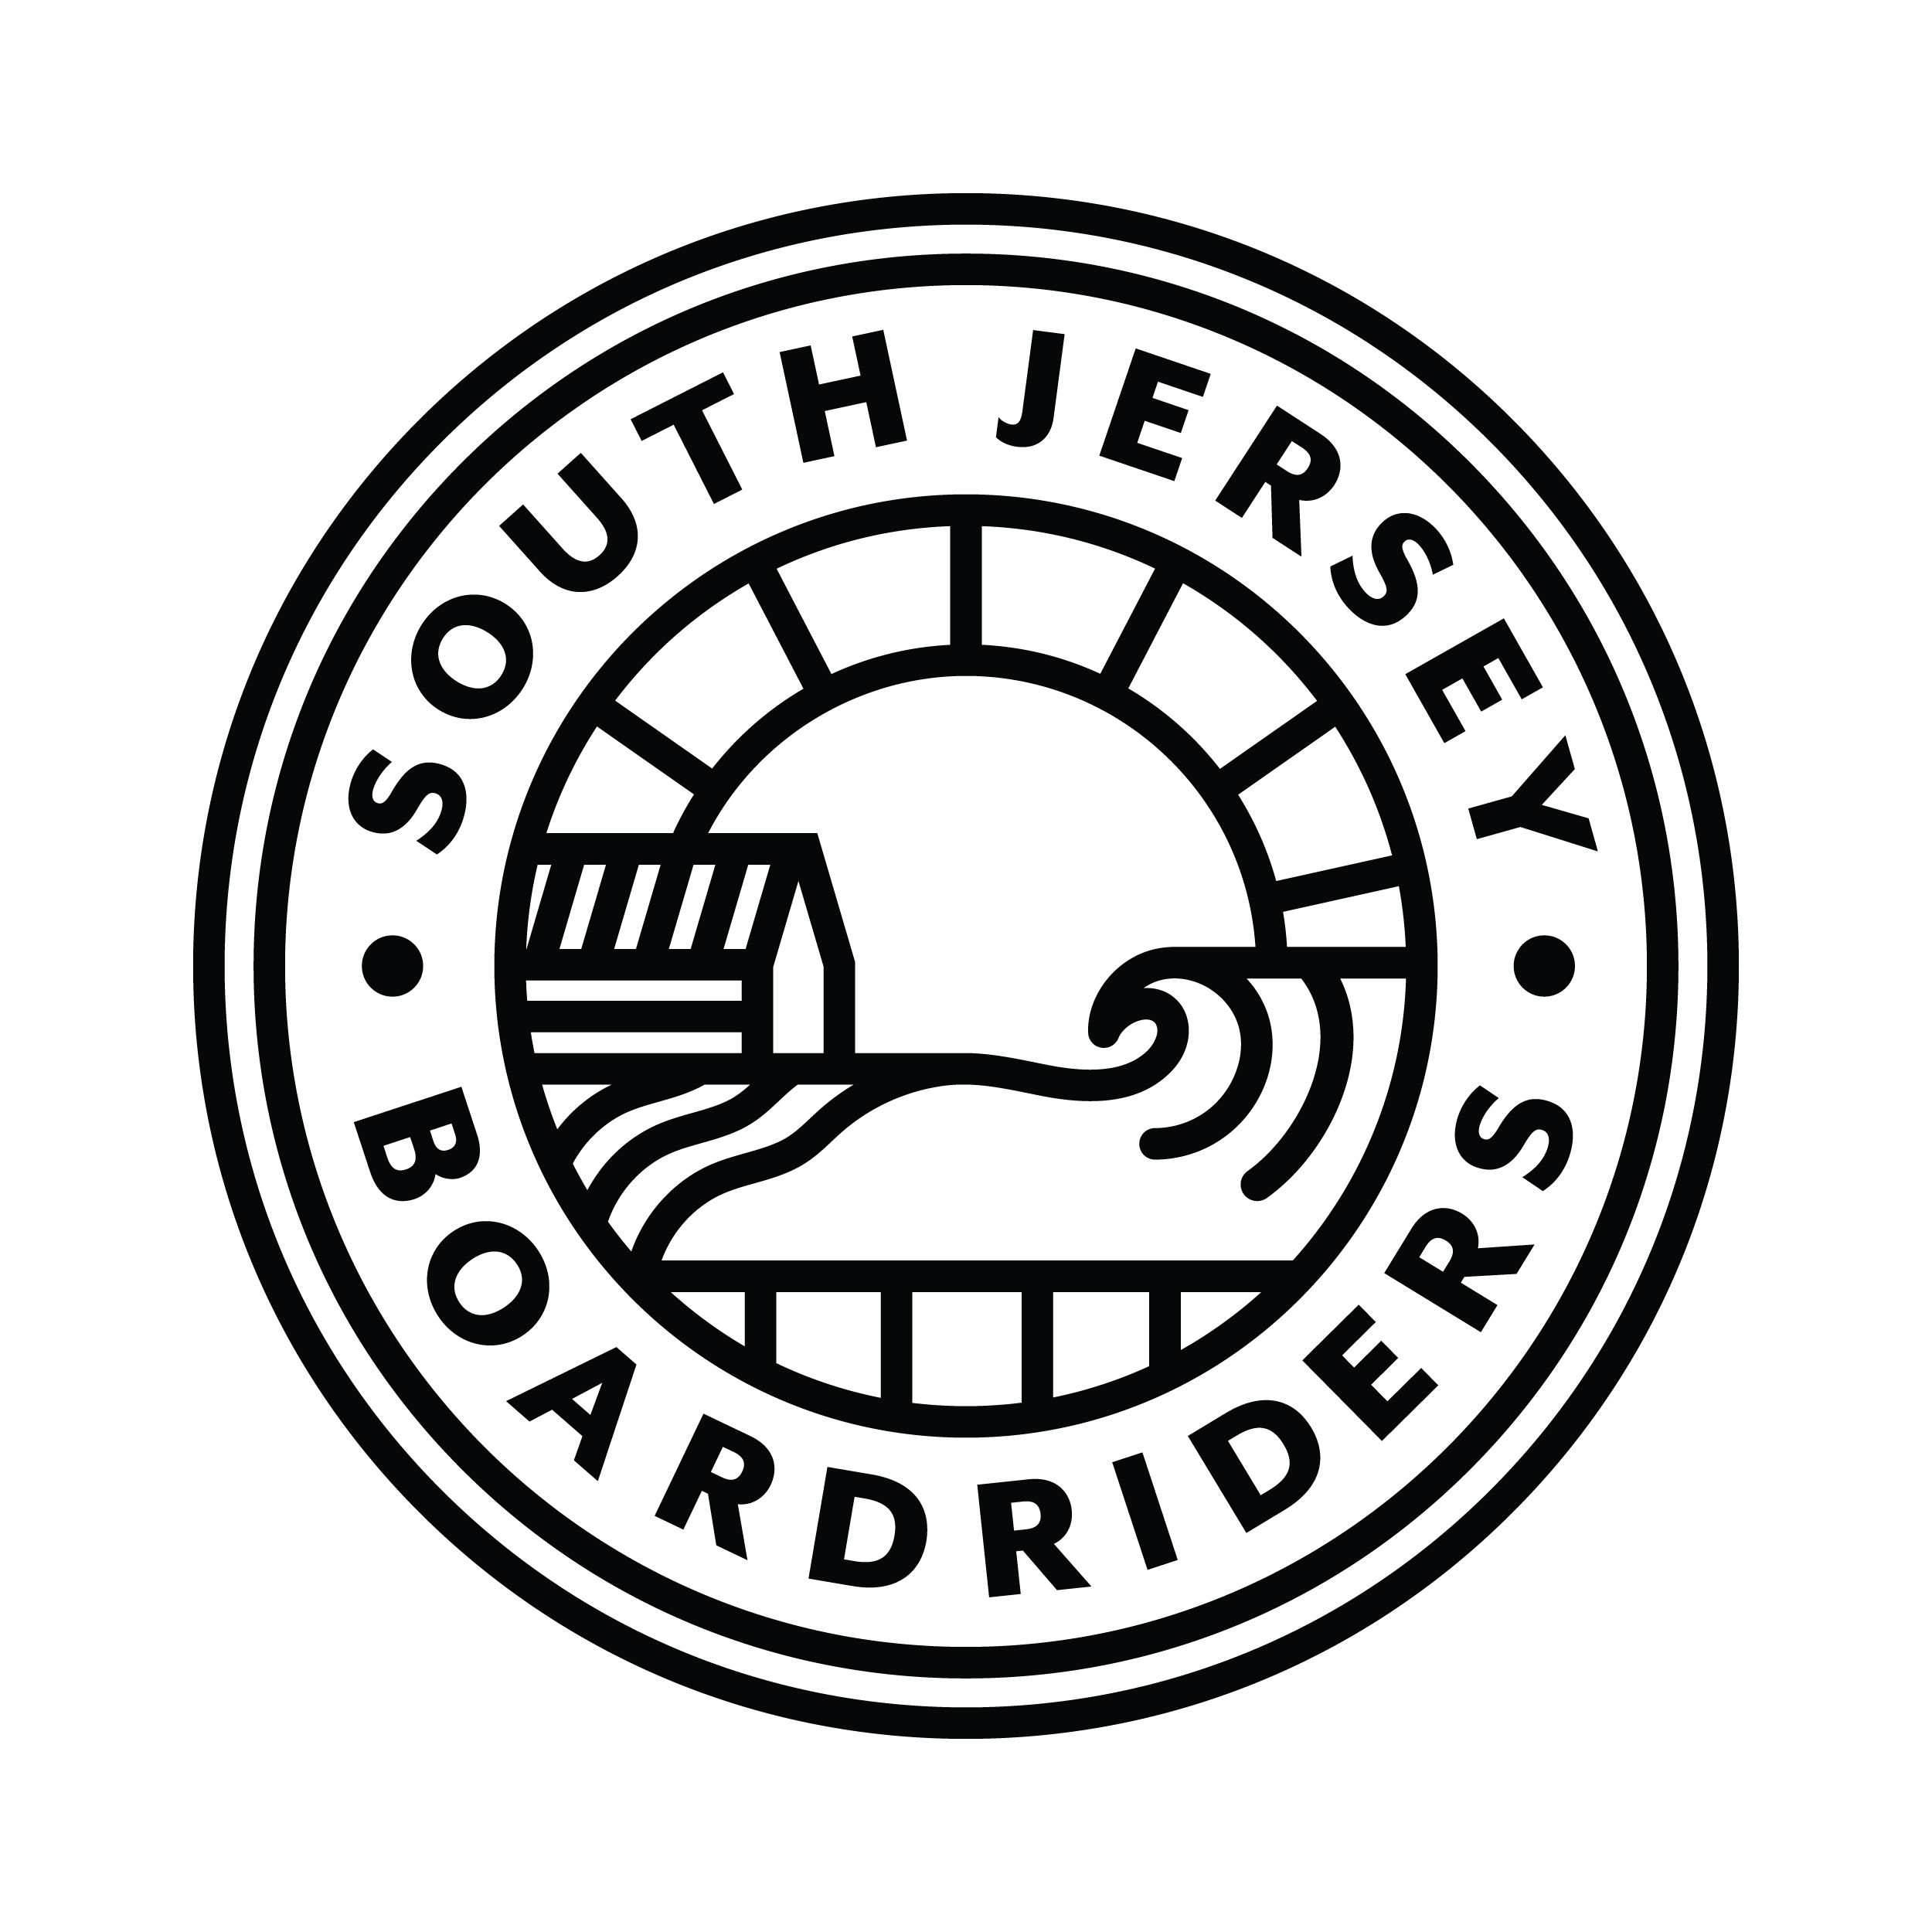 South Jersey Boardriders